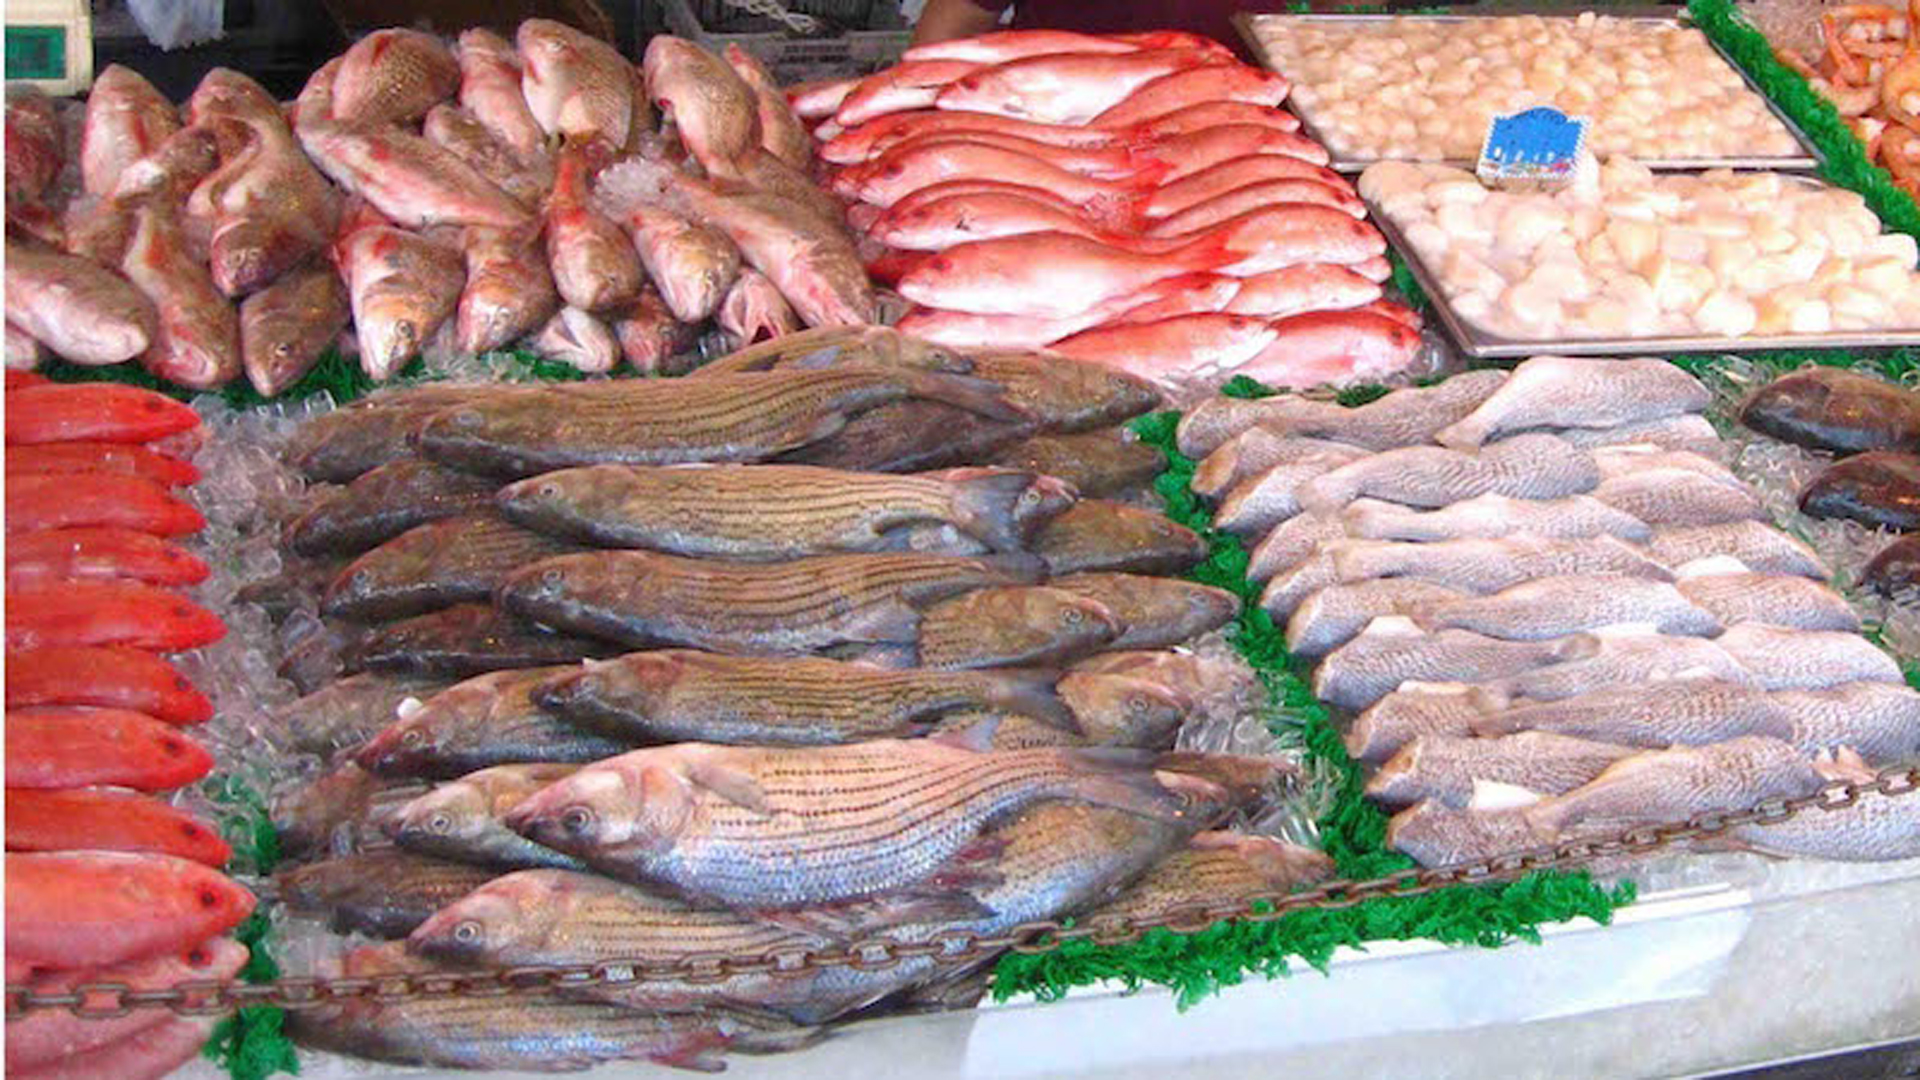 También tendrán pescado fresco en sus bodegas (Foto: Archivo)